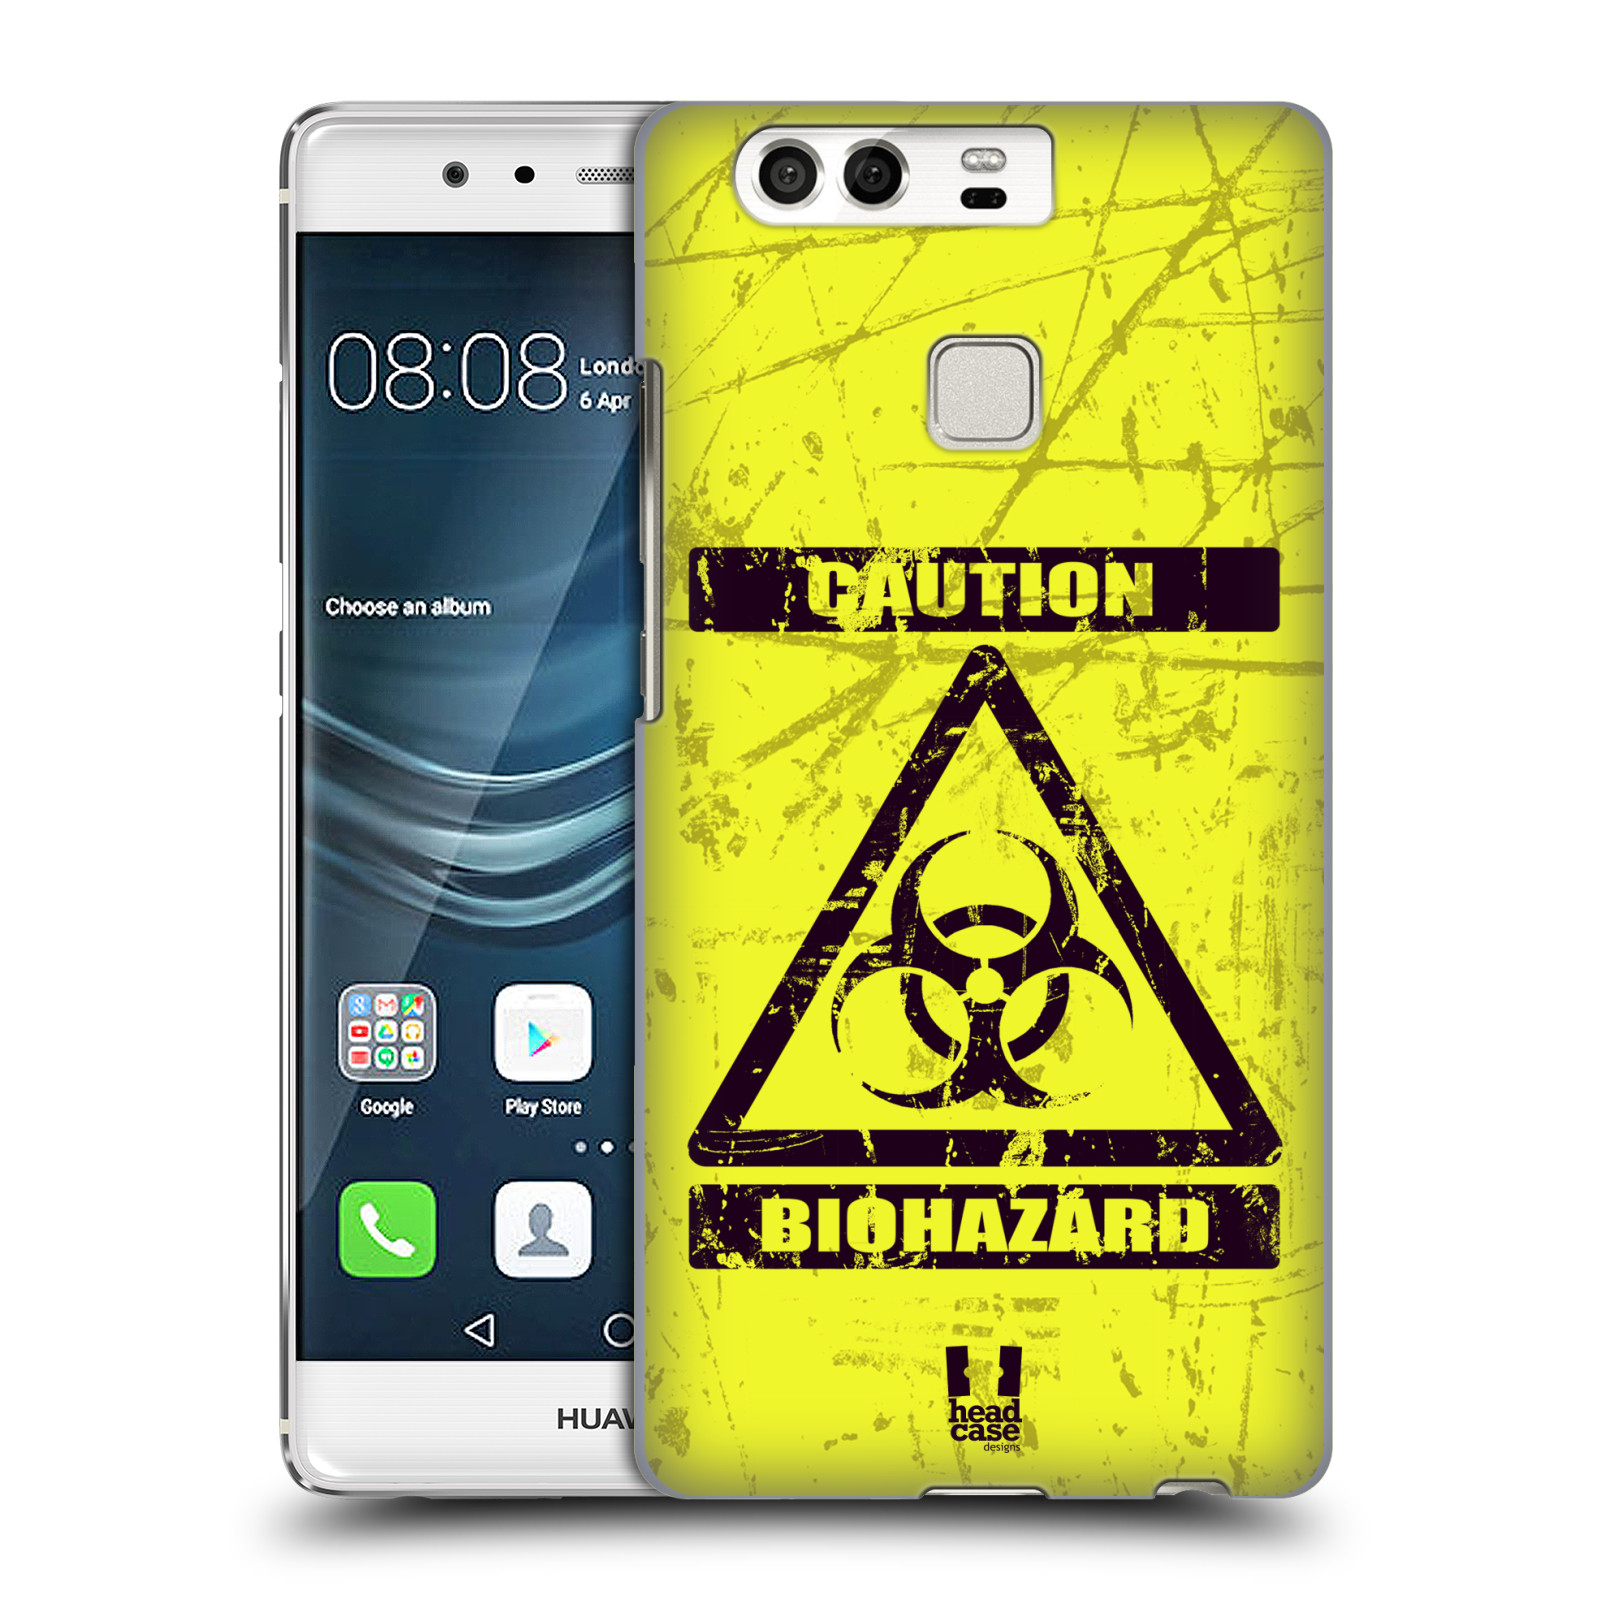 Pouzdro na mobil Huawei P9 / P9 DUAL SIM - HEAD CASE - Biohazard